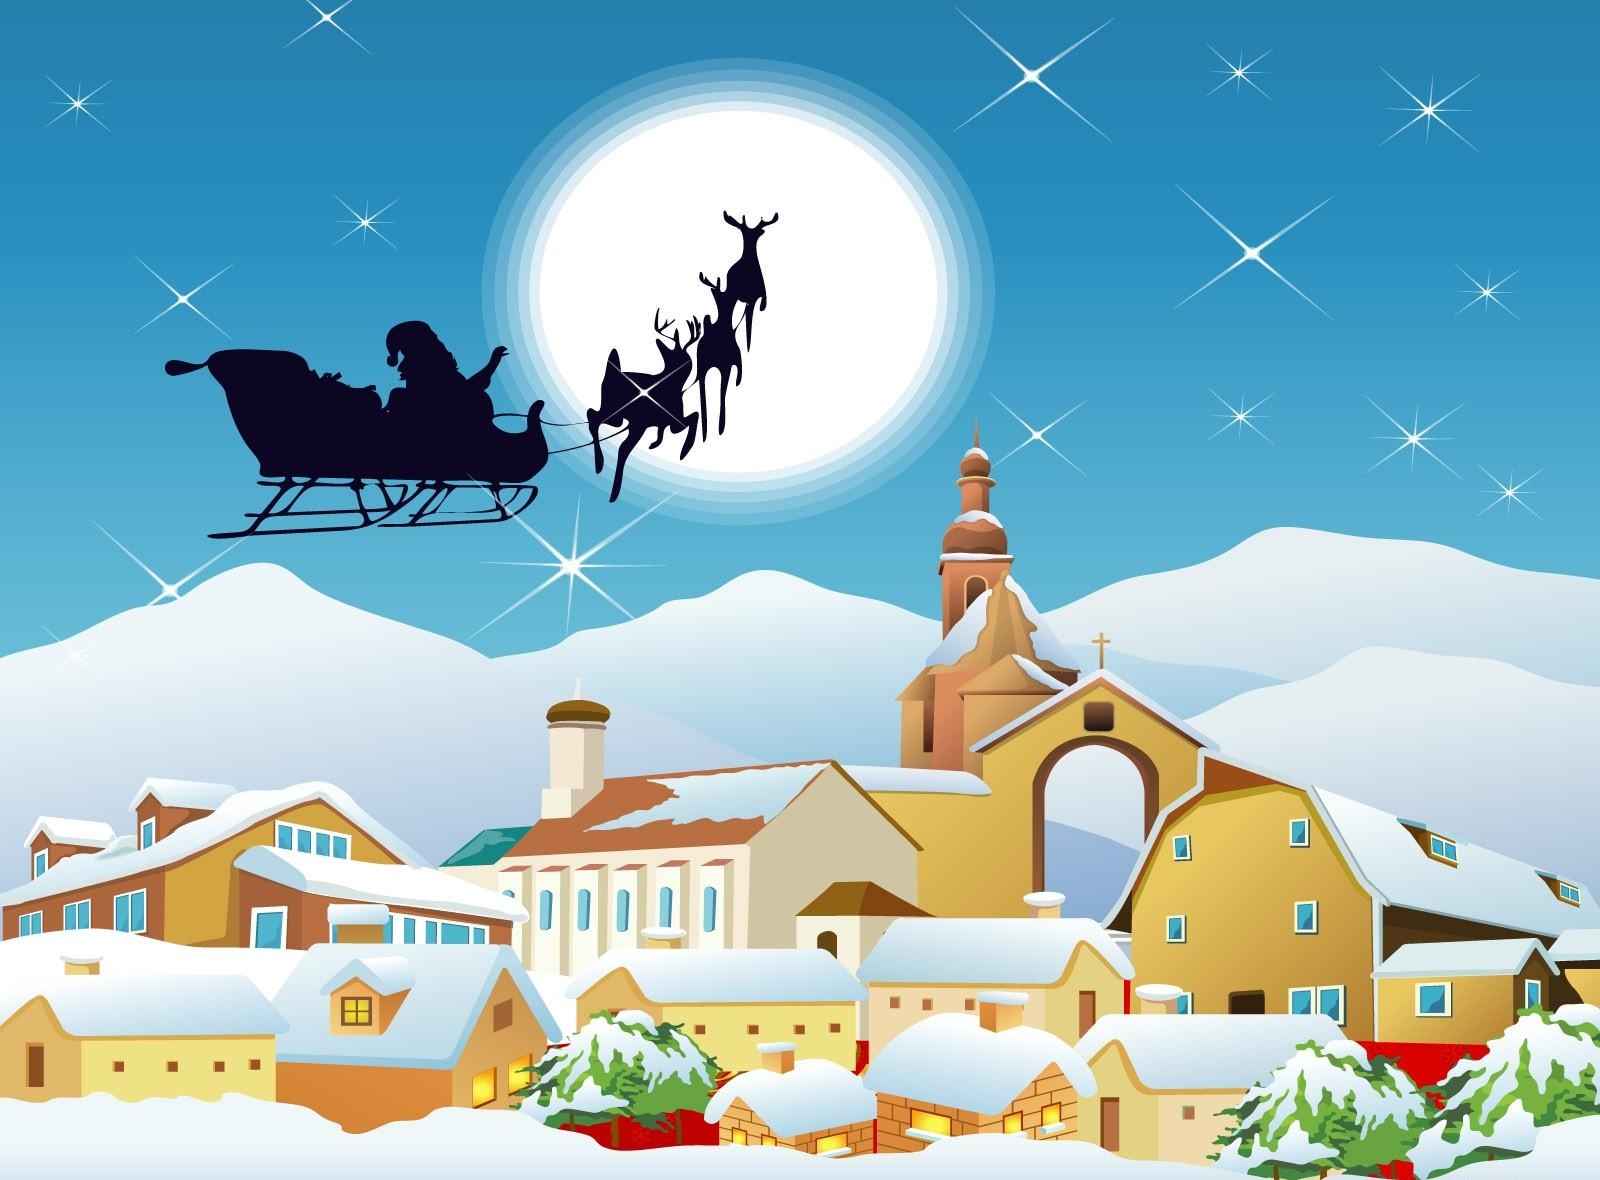 holidays, houses, santa claus, moon, city, flight, sleigh, sledge